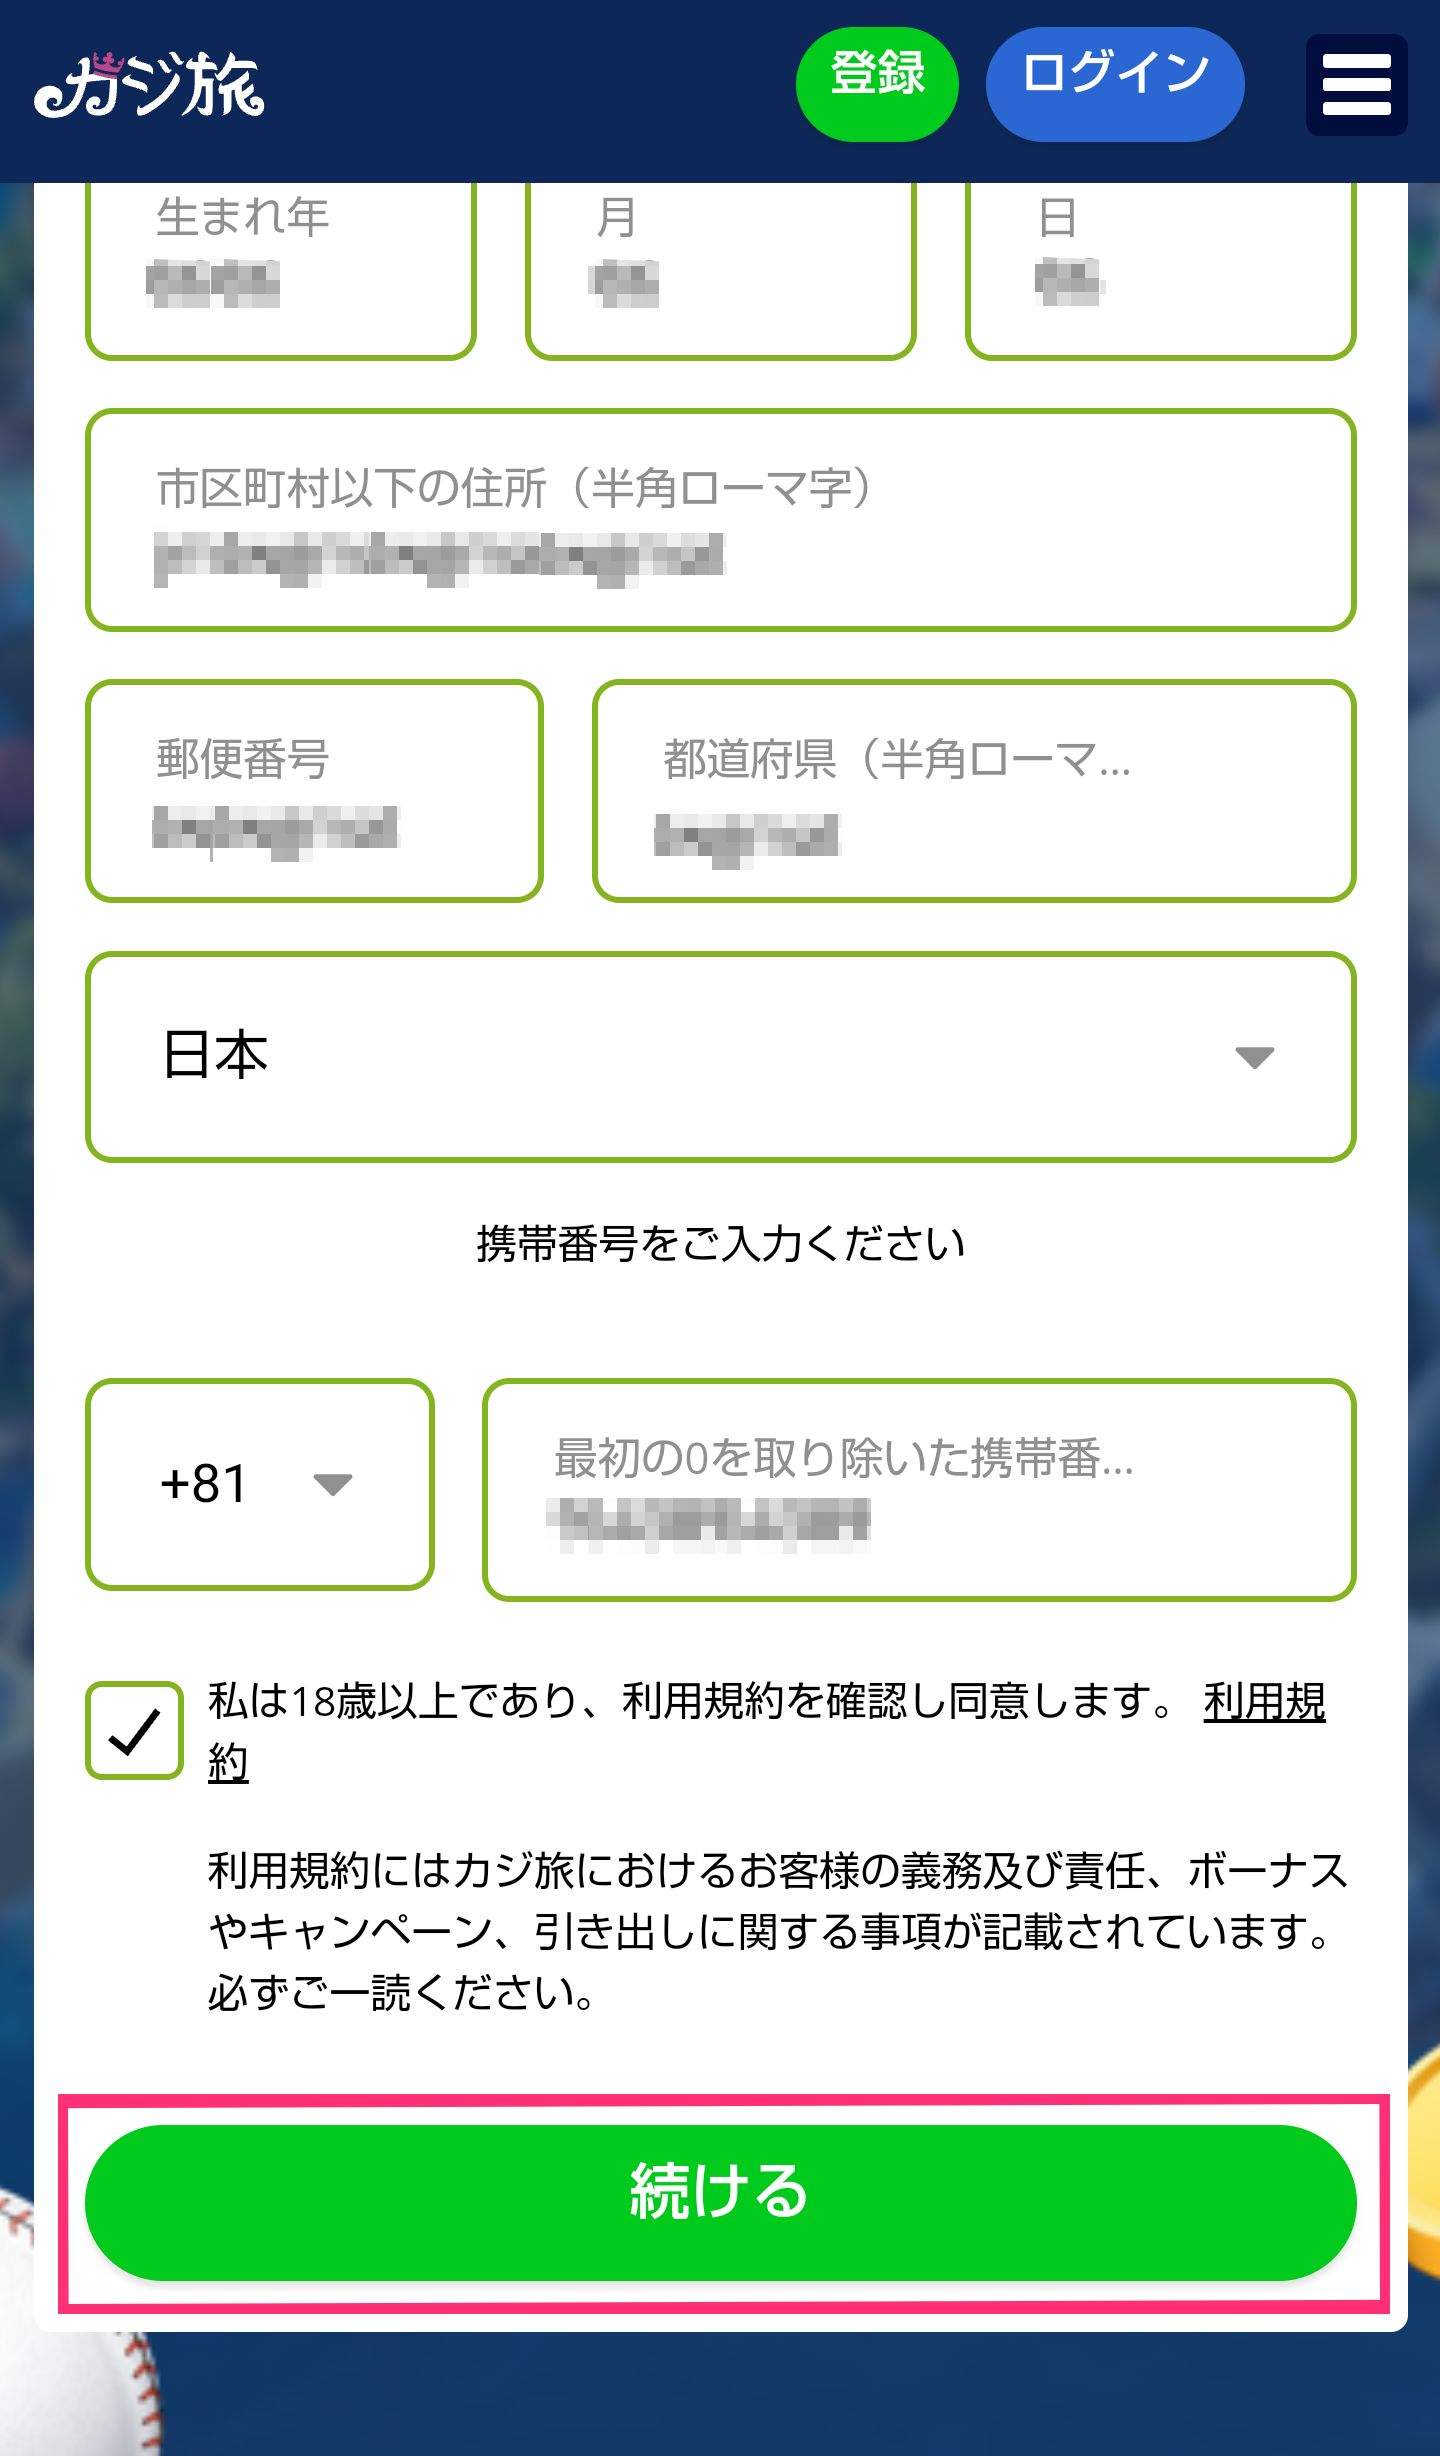 【カジ旅】登録方法4